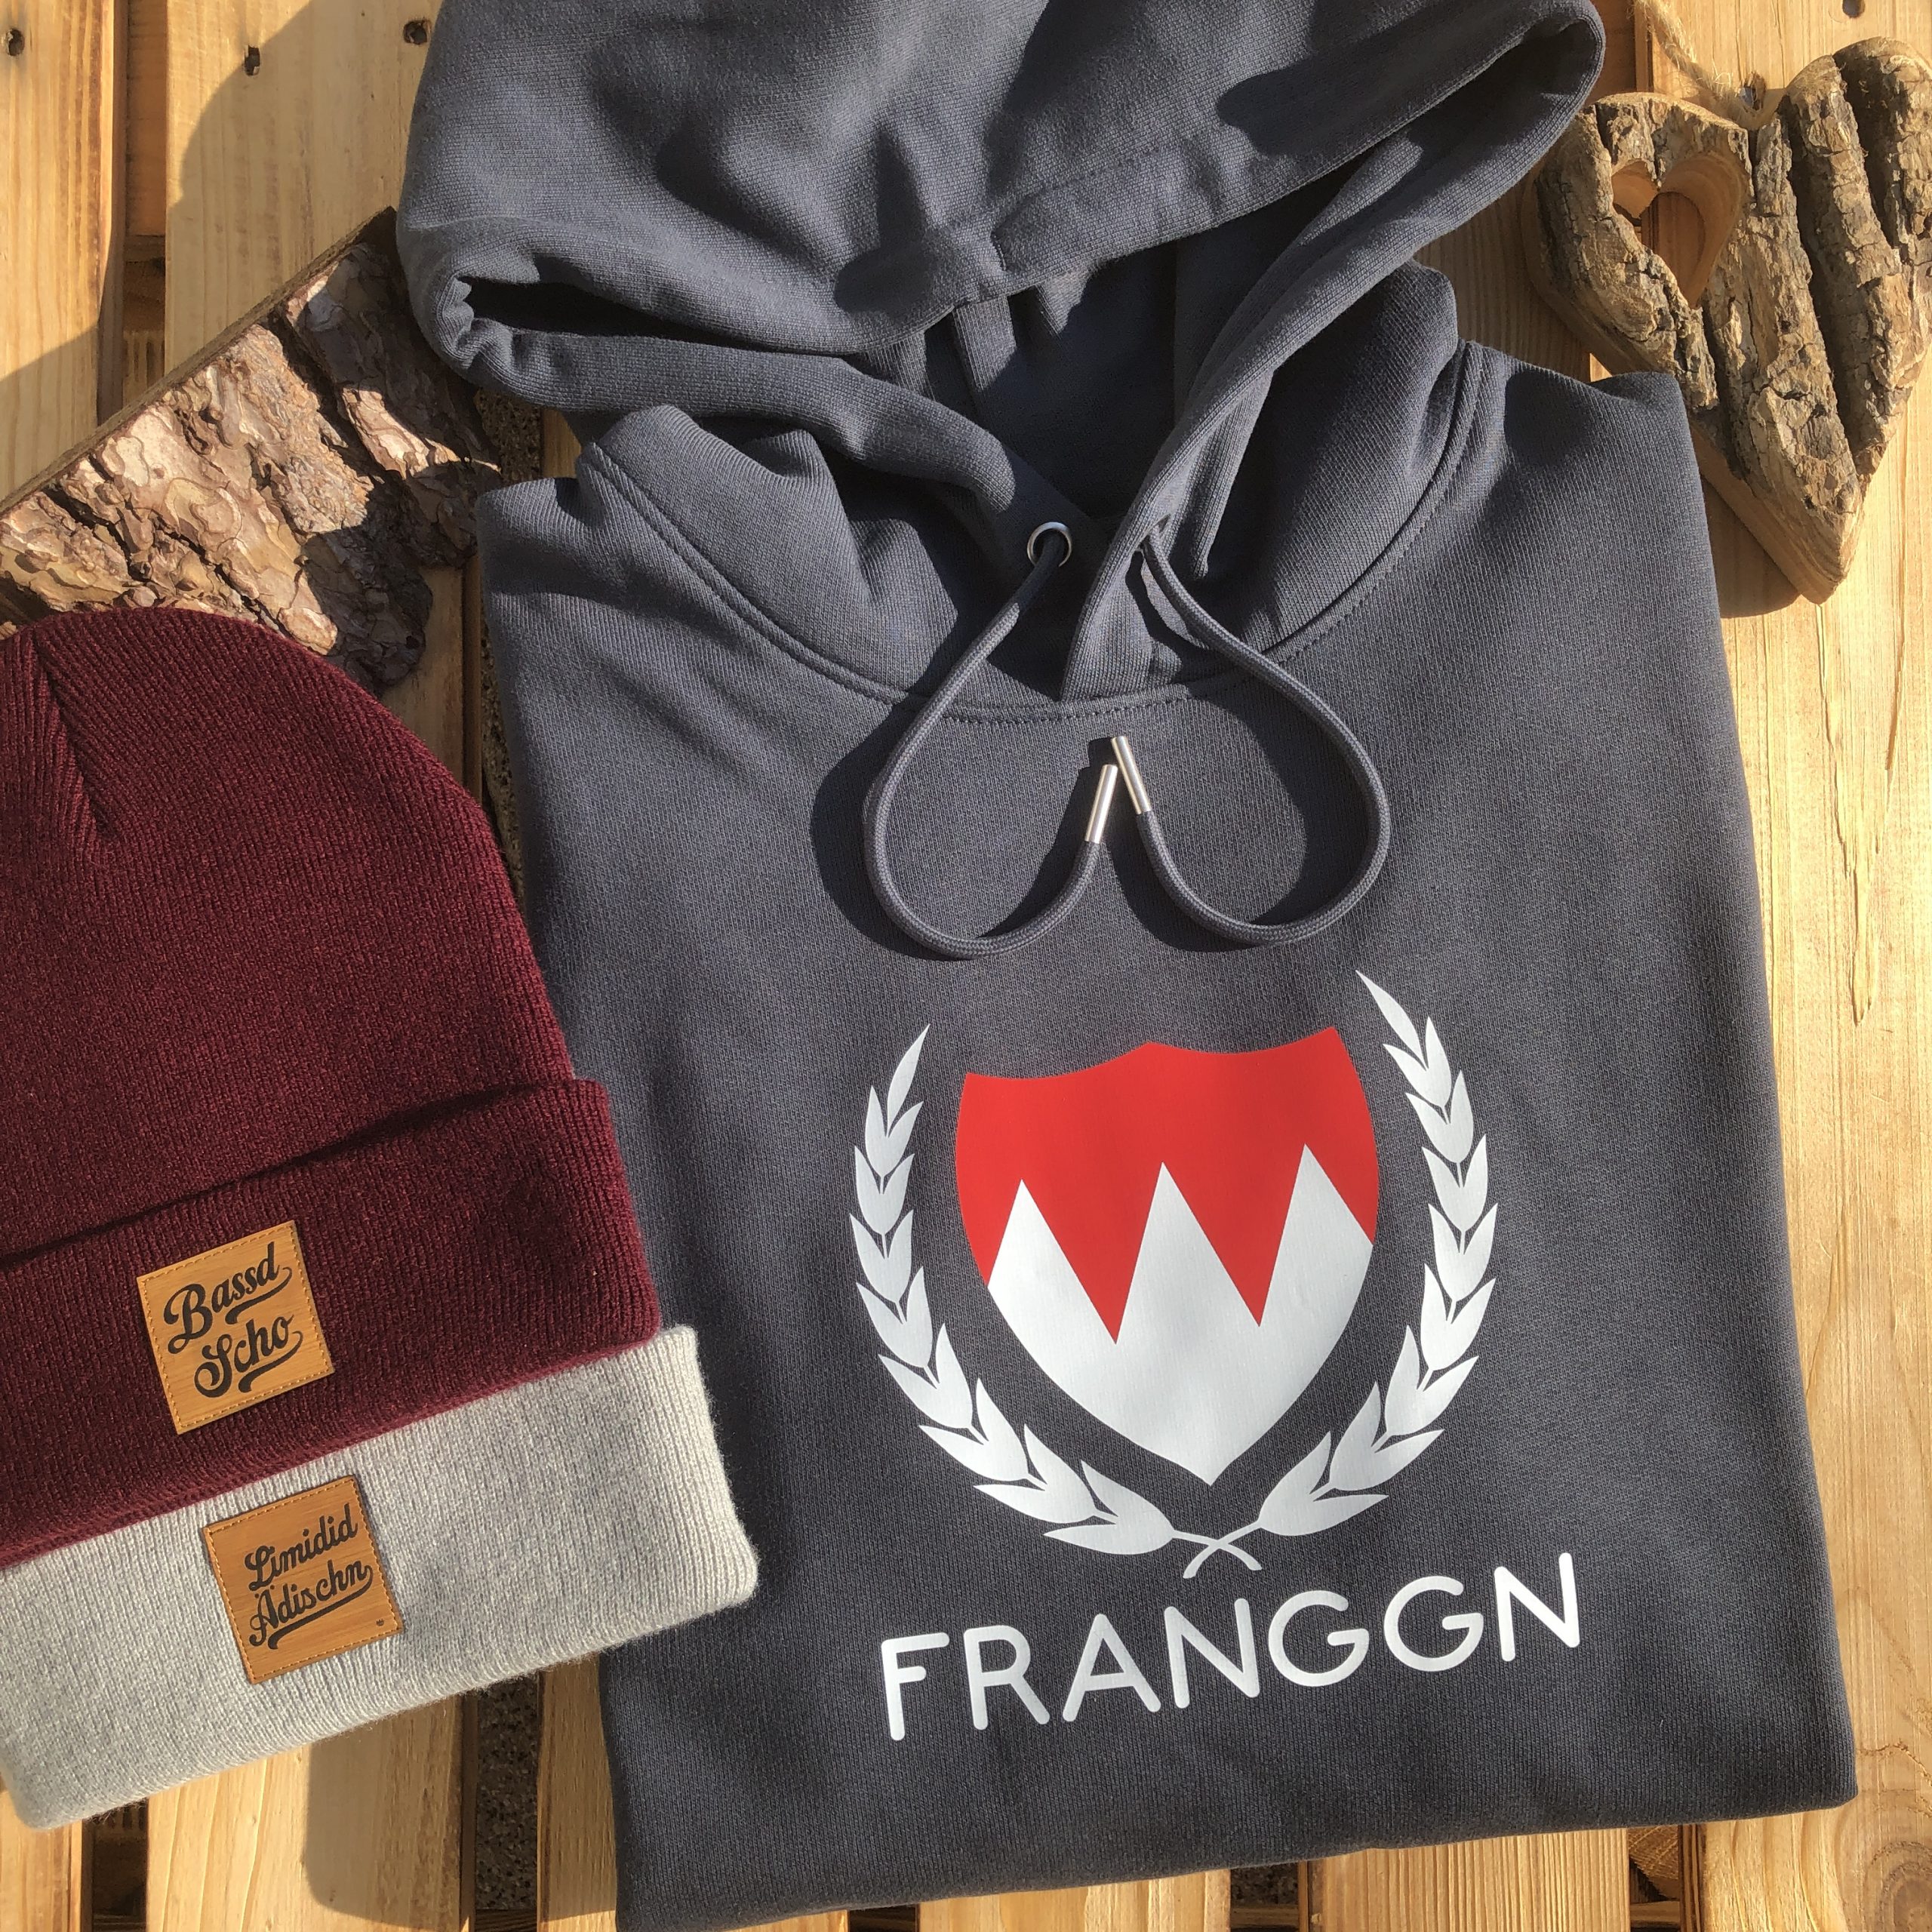 Franggn Hoodie mit fränkischem Wappen Franken´style Hoodie Shop Fürth